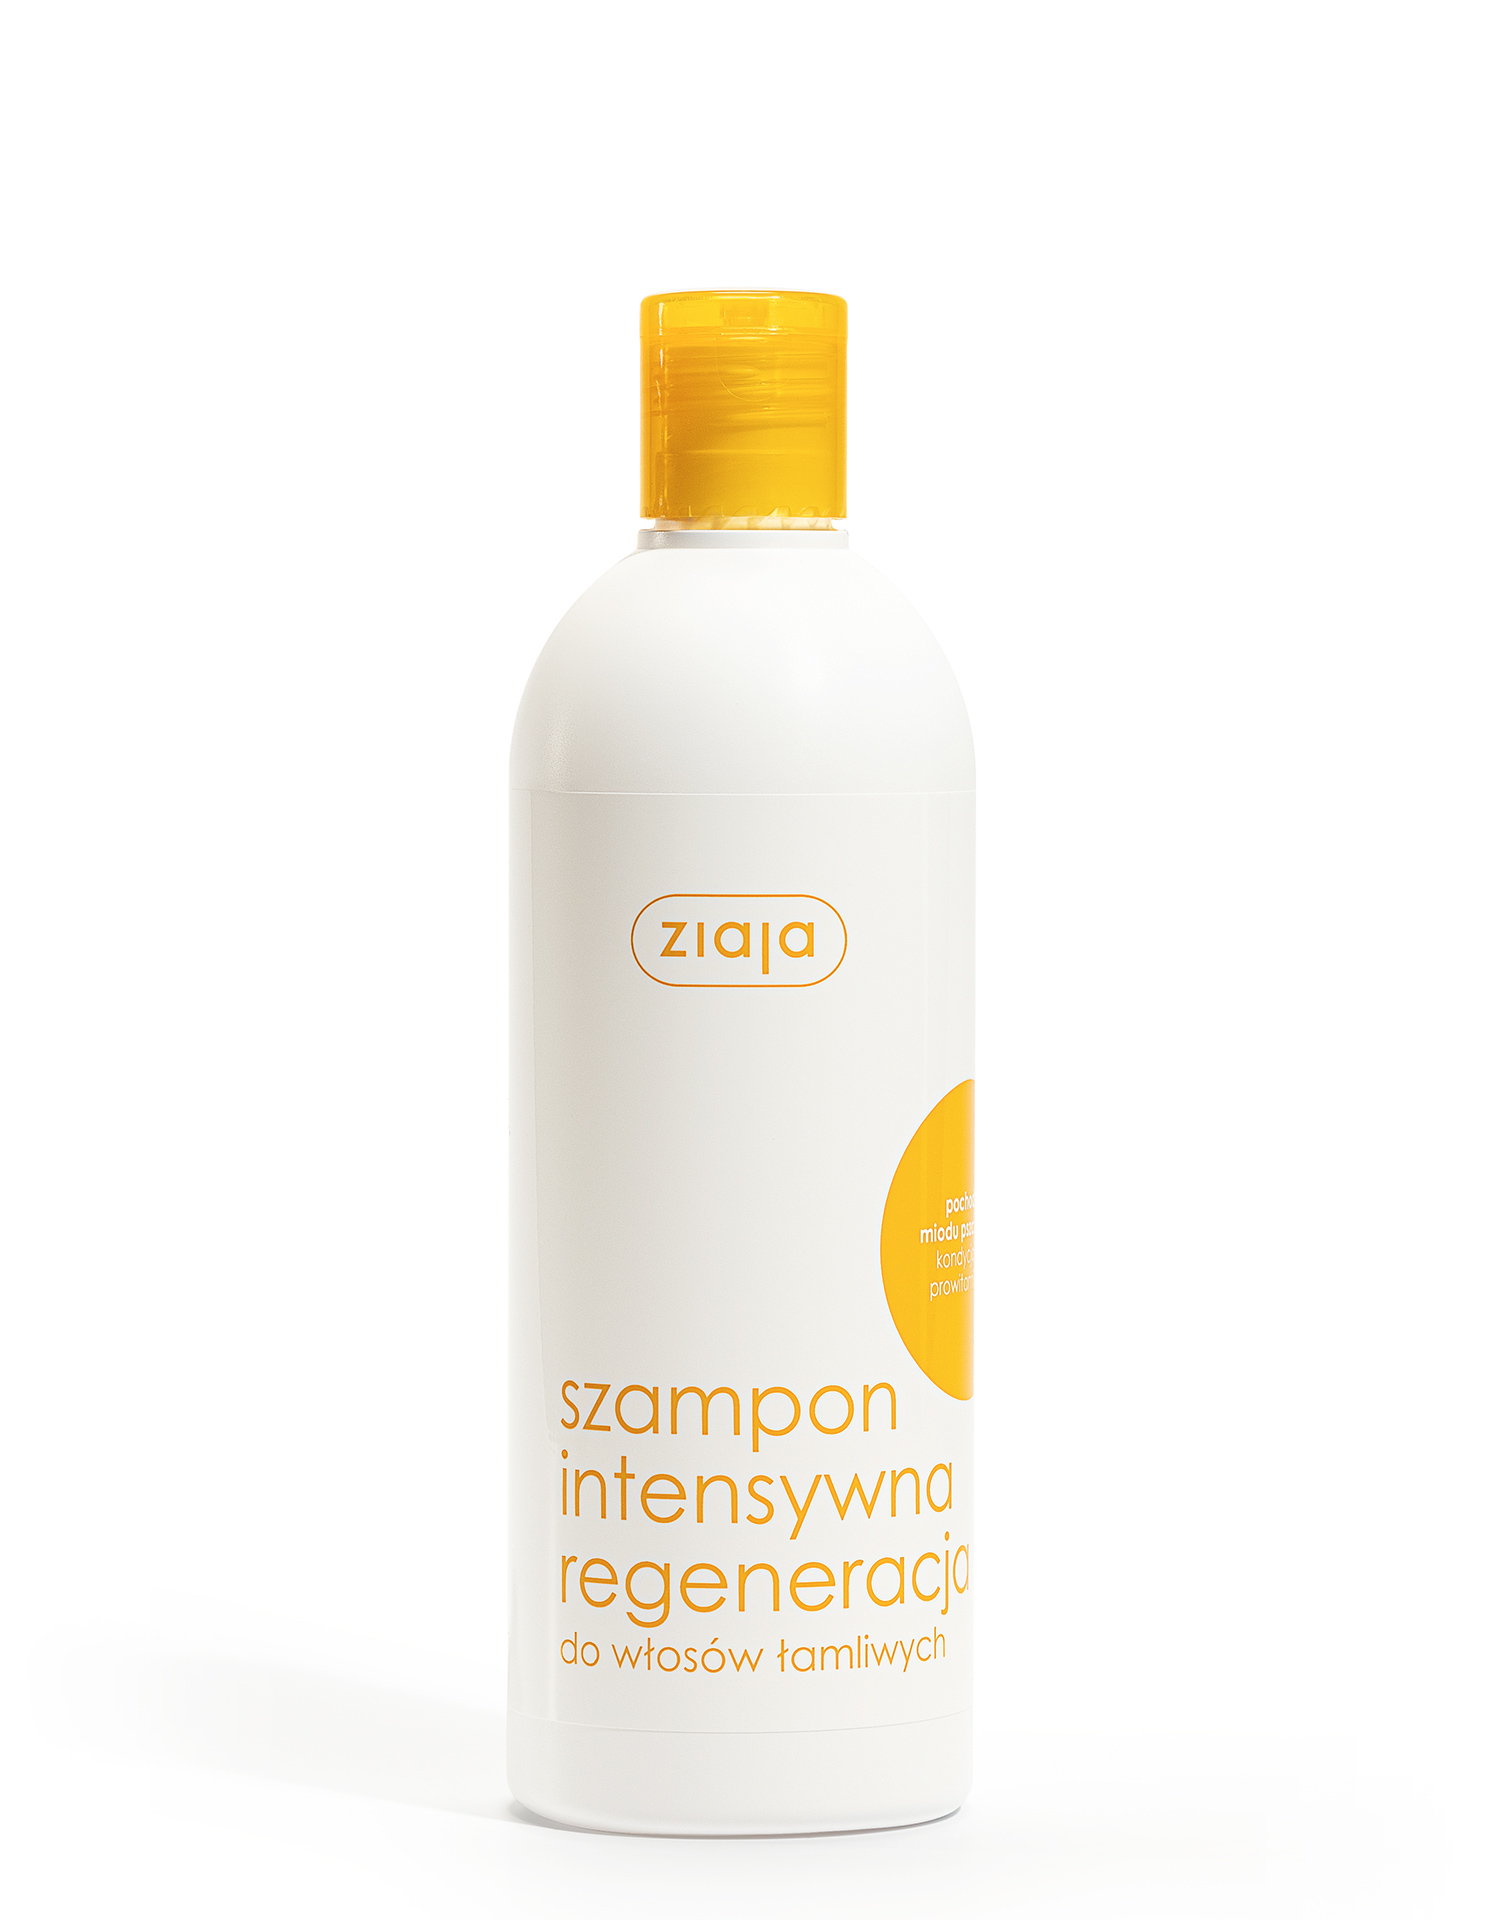 ziaja szampon intensywna regeneracja miód